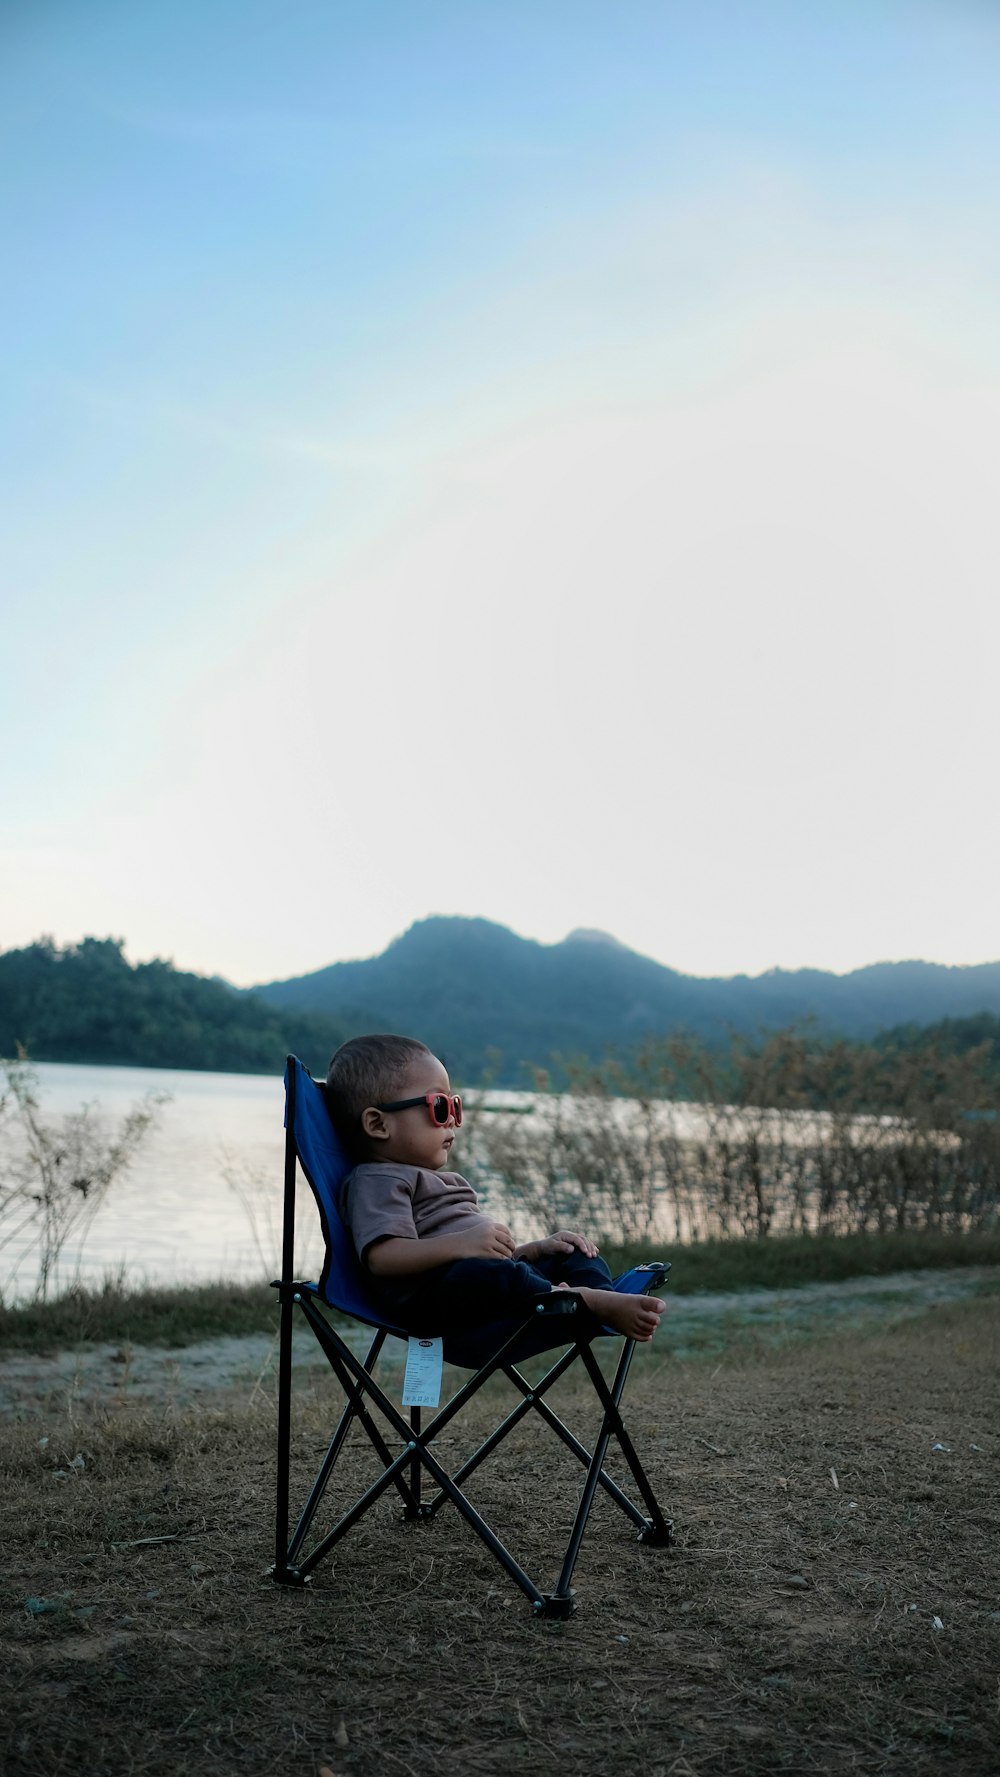 niño pequeño sentado en silla de camping negra y azul